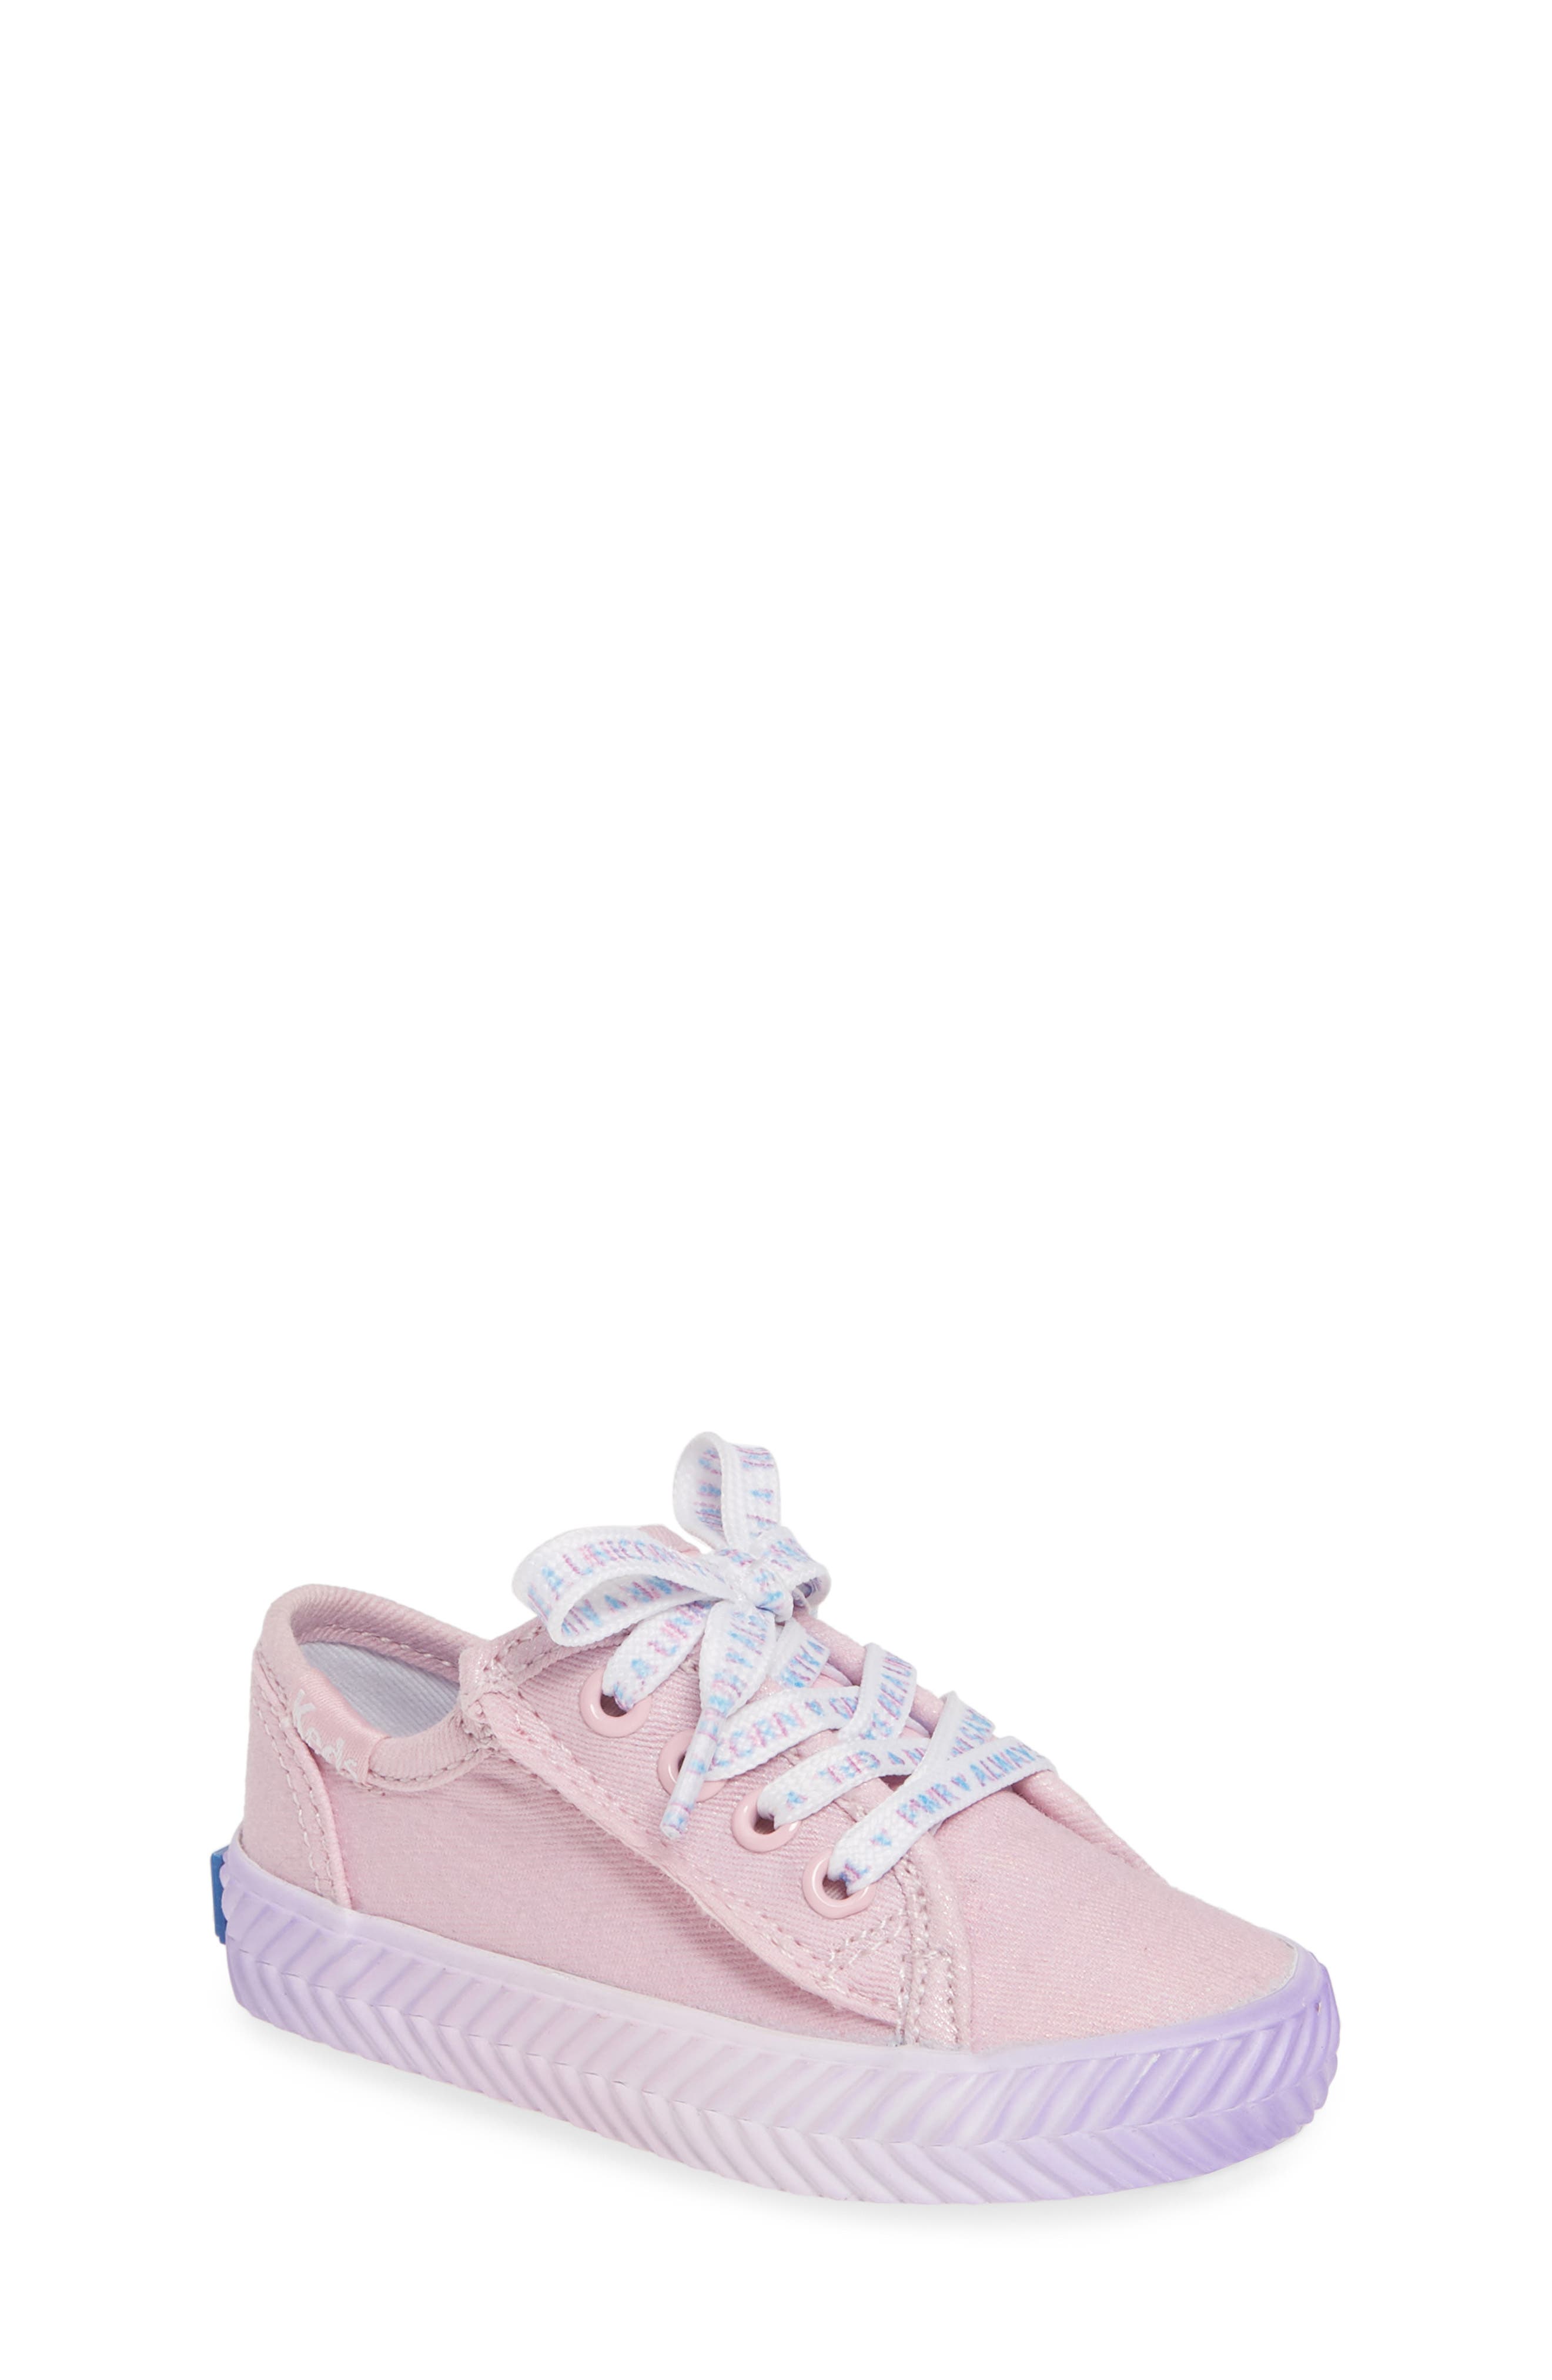 UPC 884506127108 product image for Infant Keds Kickstart Sneaker, Size 4 M - Pink | upcitemdb.com